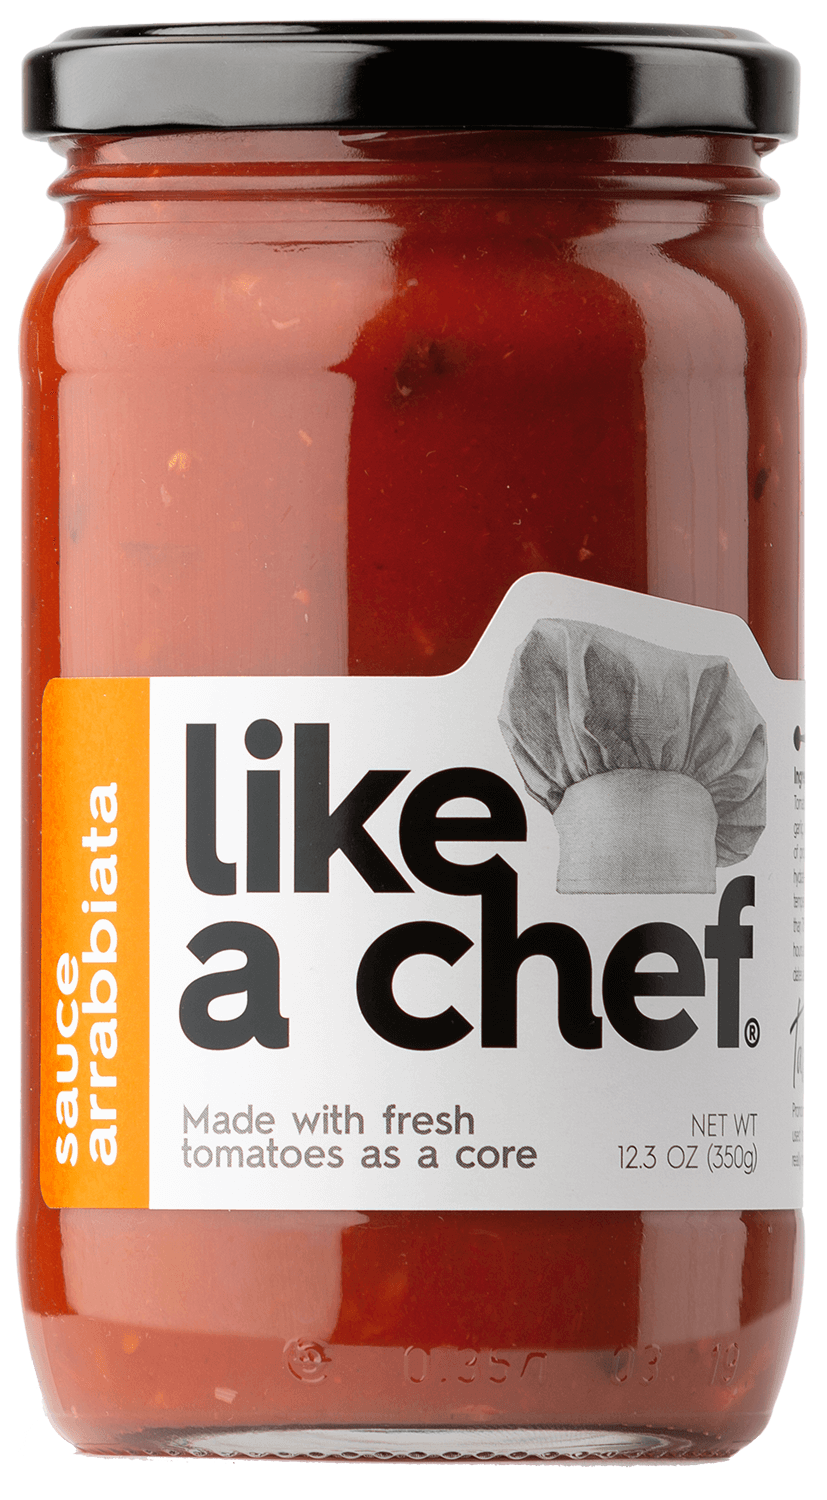 Arrabbiatta tomato sauce Like a Chef